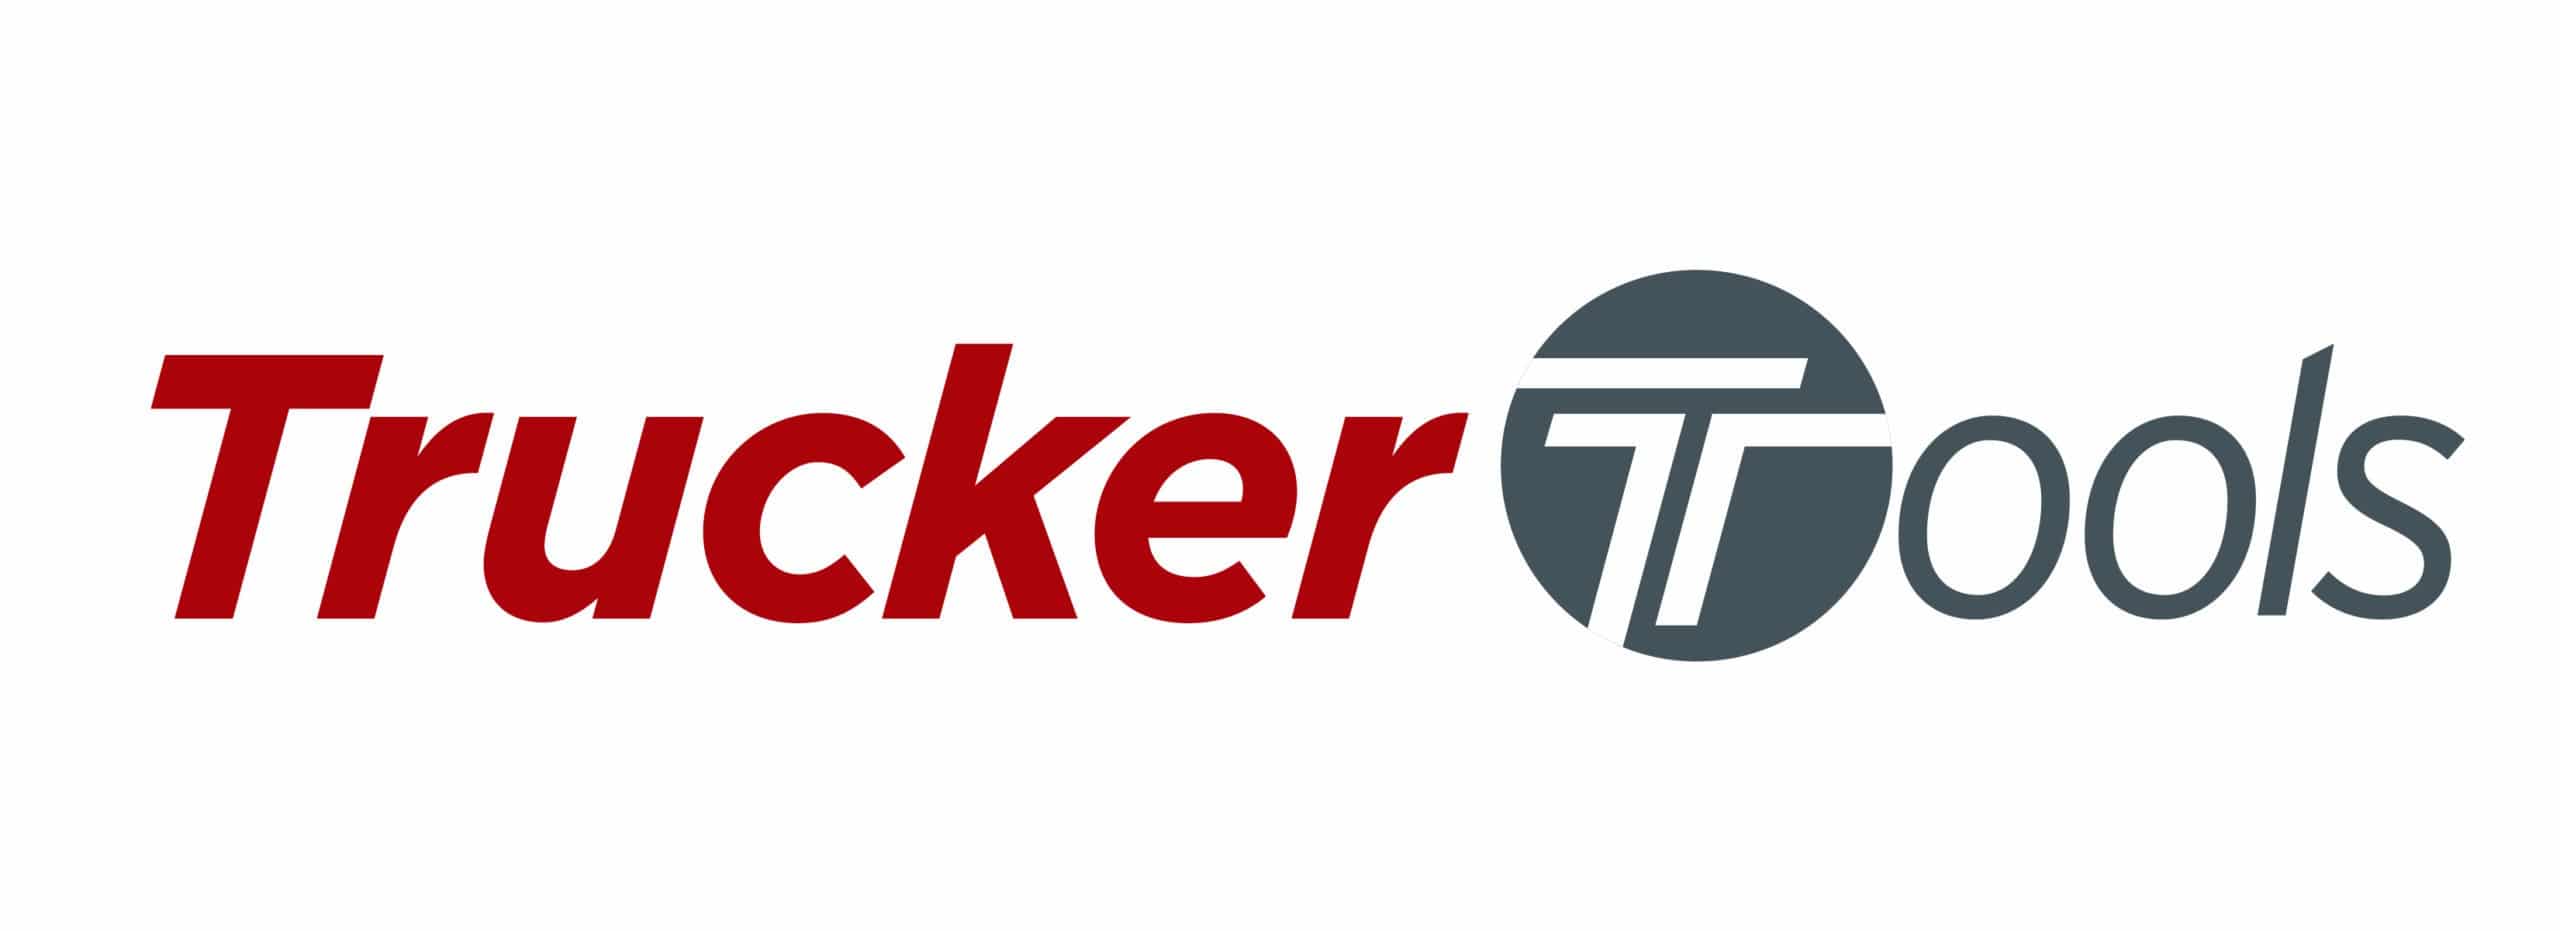 Trucker-Tools-logo